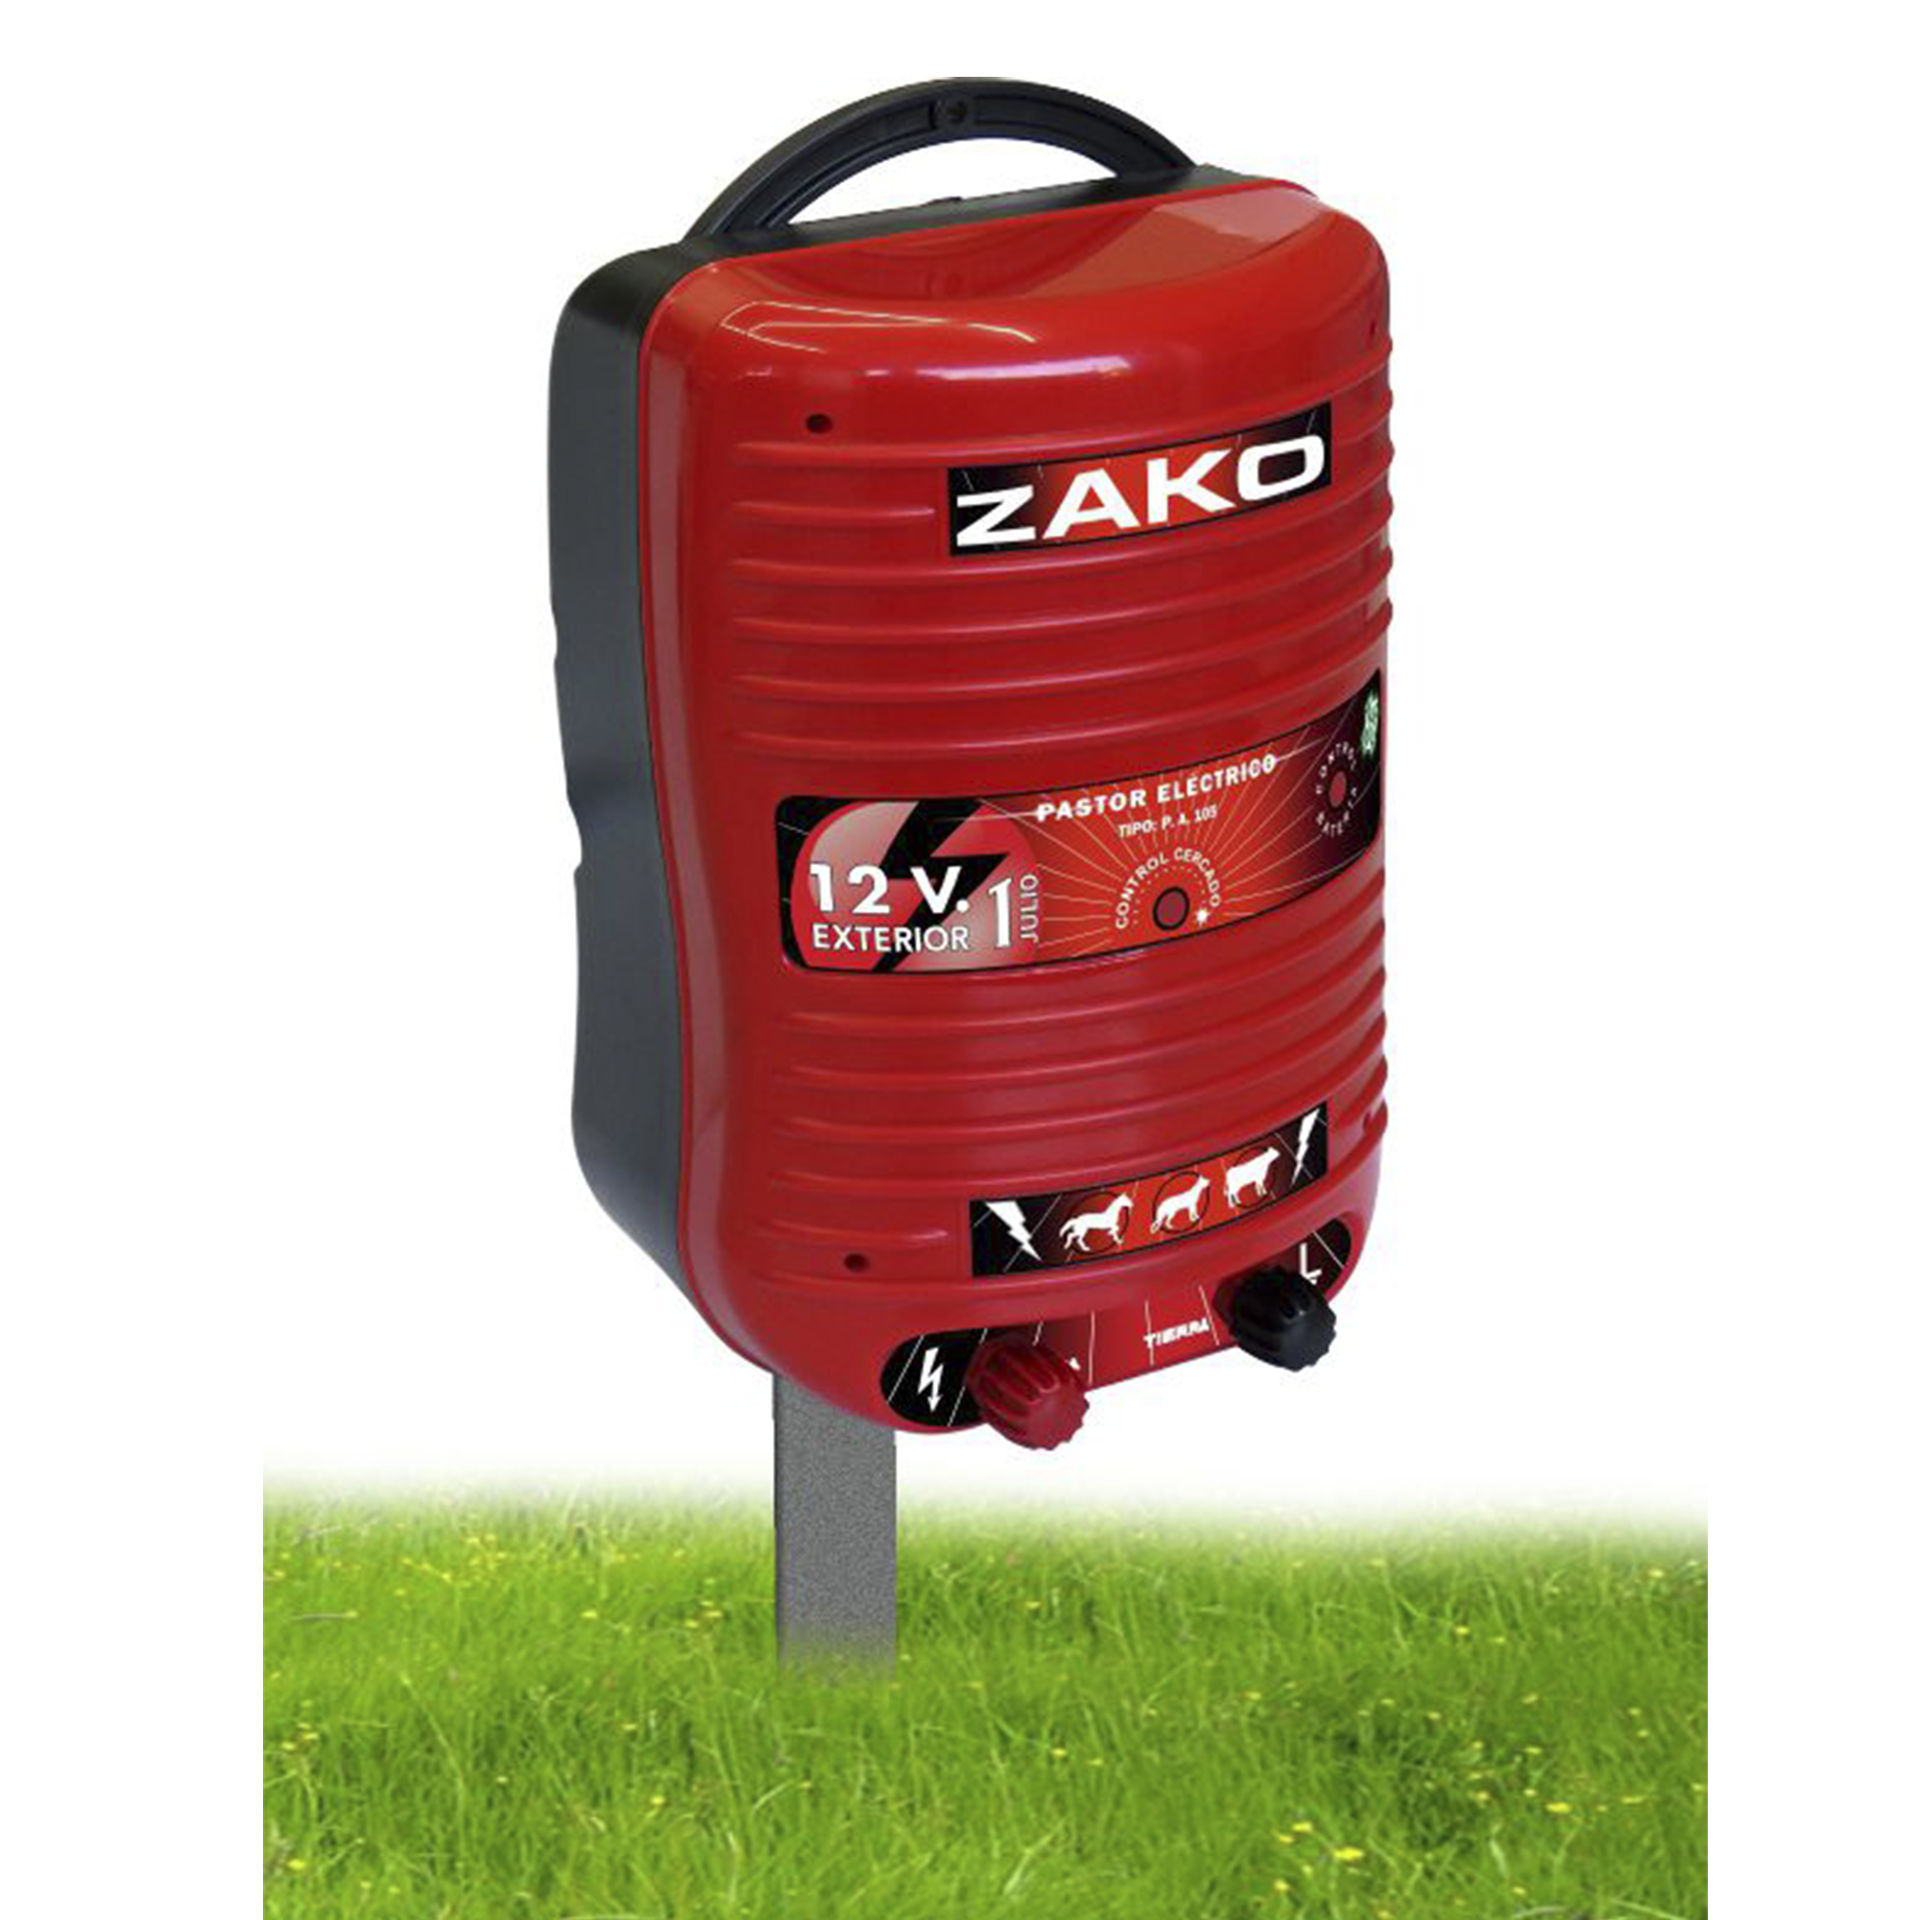 ZAR - Pastor Zako 12 voltios Batería exterior